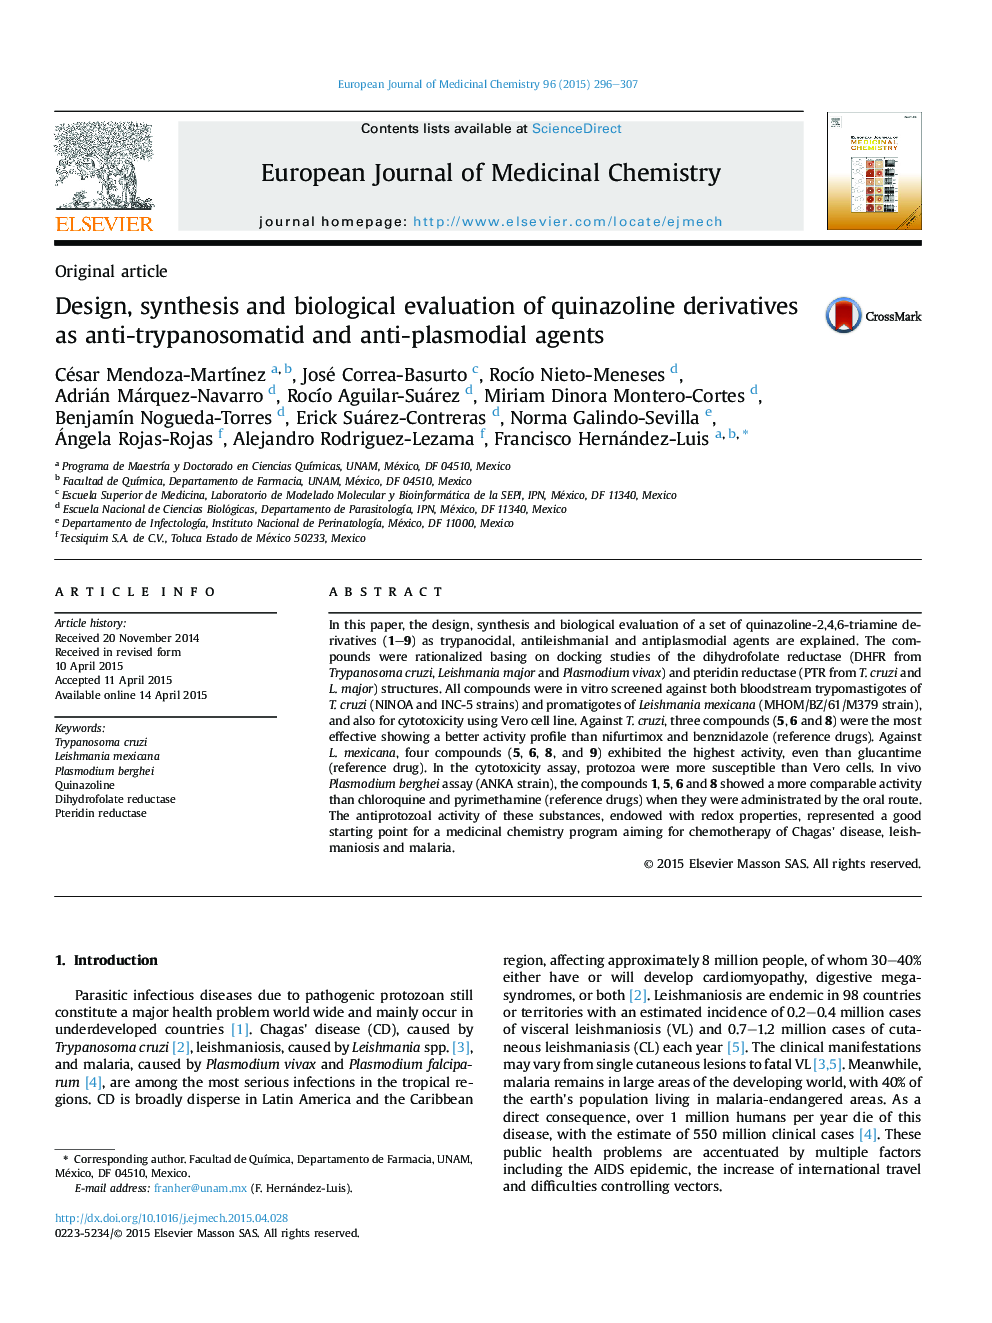 طراحی، سنتز و ارزیابی بیولوژیکی مشتقات کوینازولین به عنوان آنتی تریپانوسوماتیت ها و عوامل ضد پلاسمودیومی 